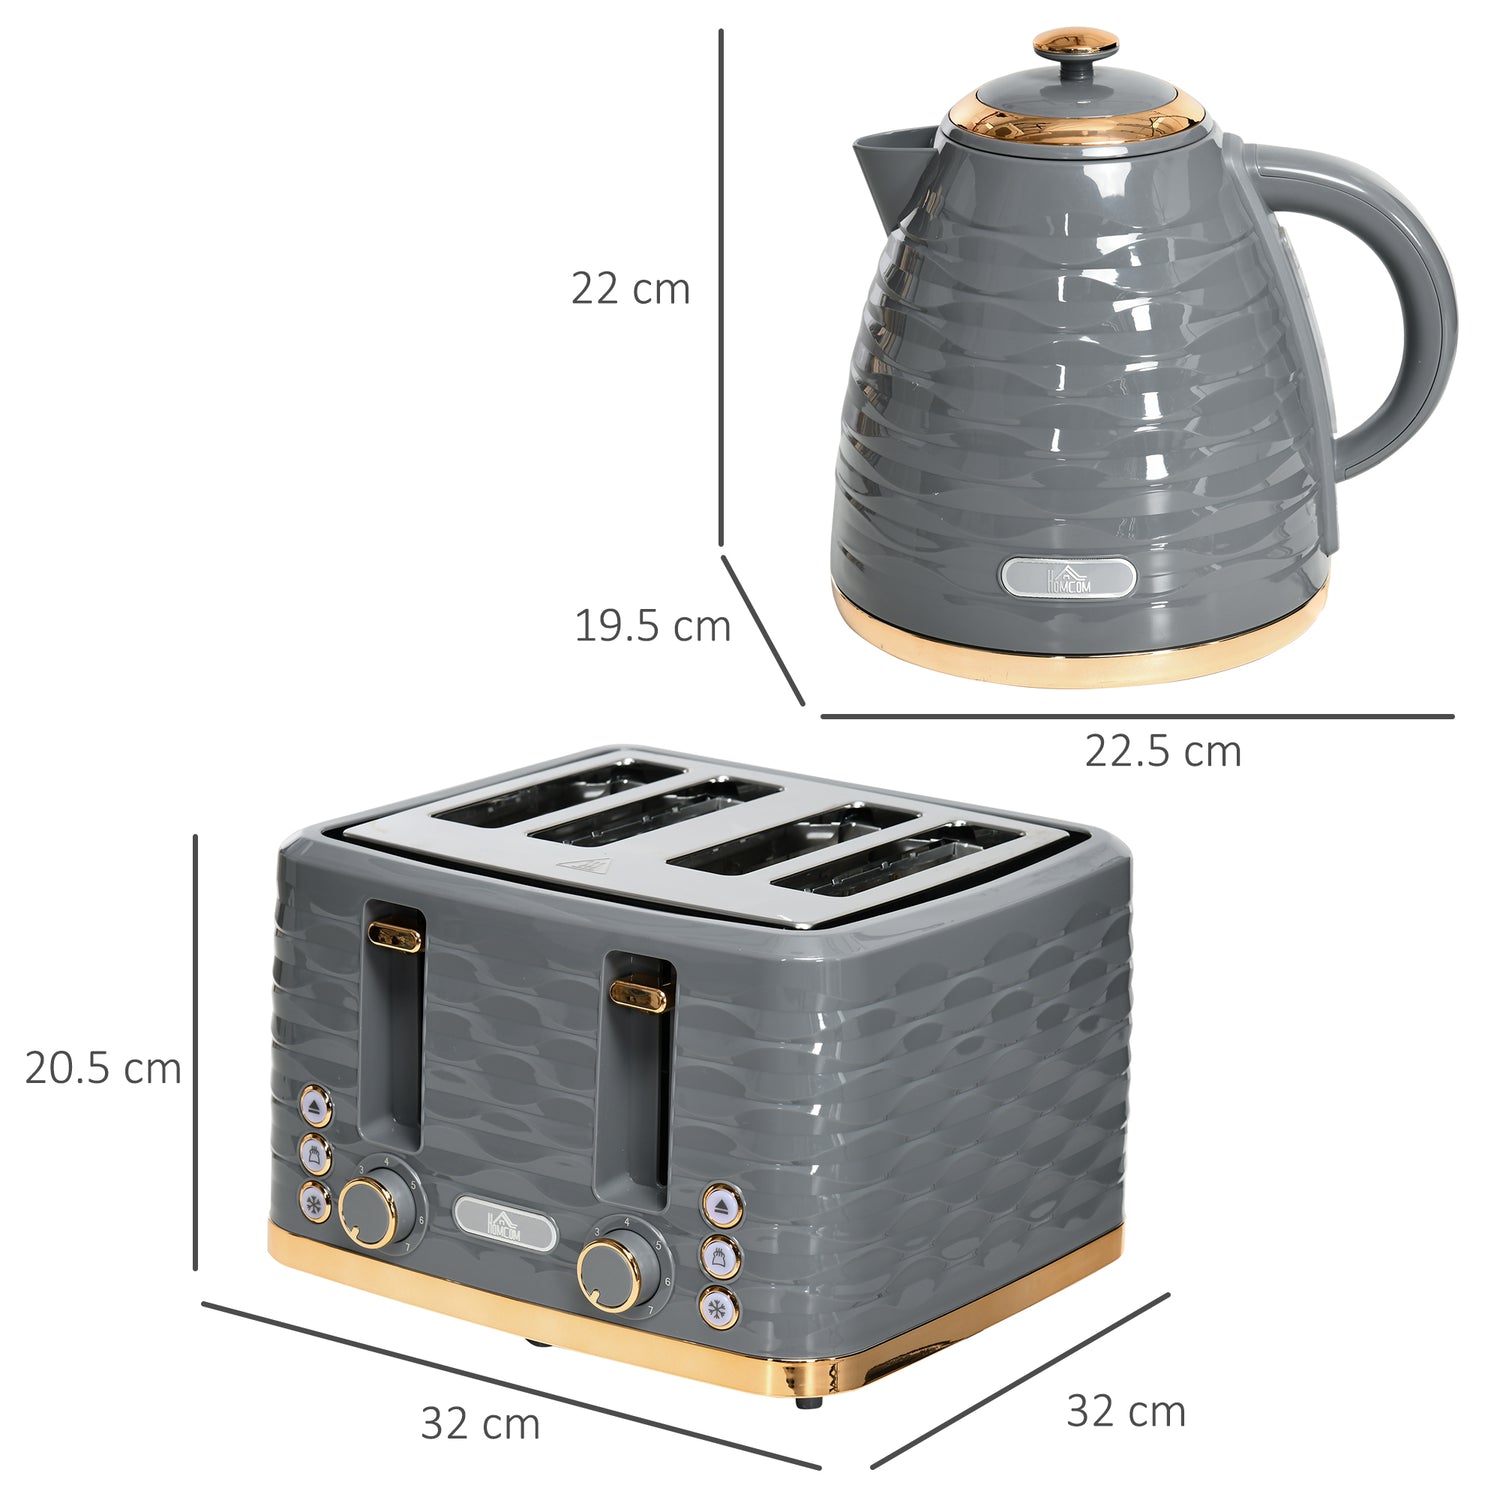 HOMCOM Kettle and Toaster Set 1.7L Rapid Boil Kettle & 4 Slice